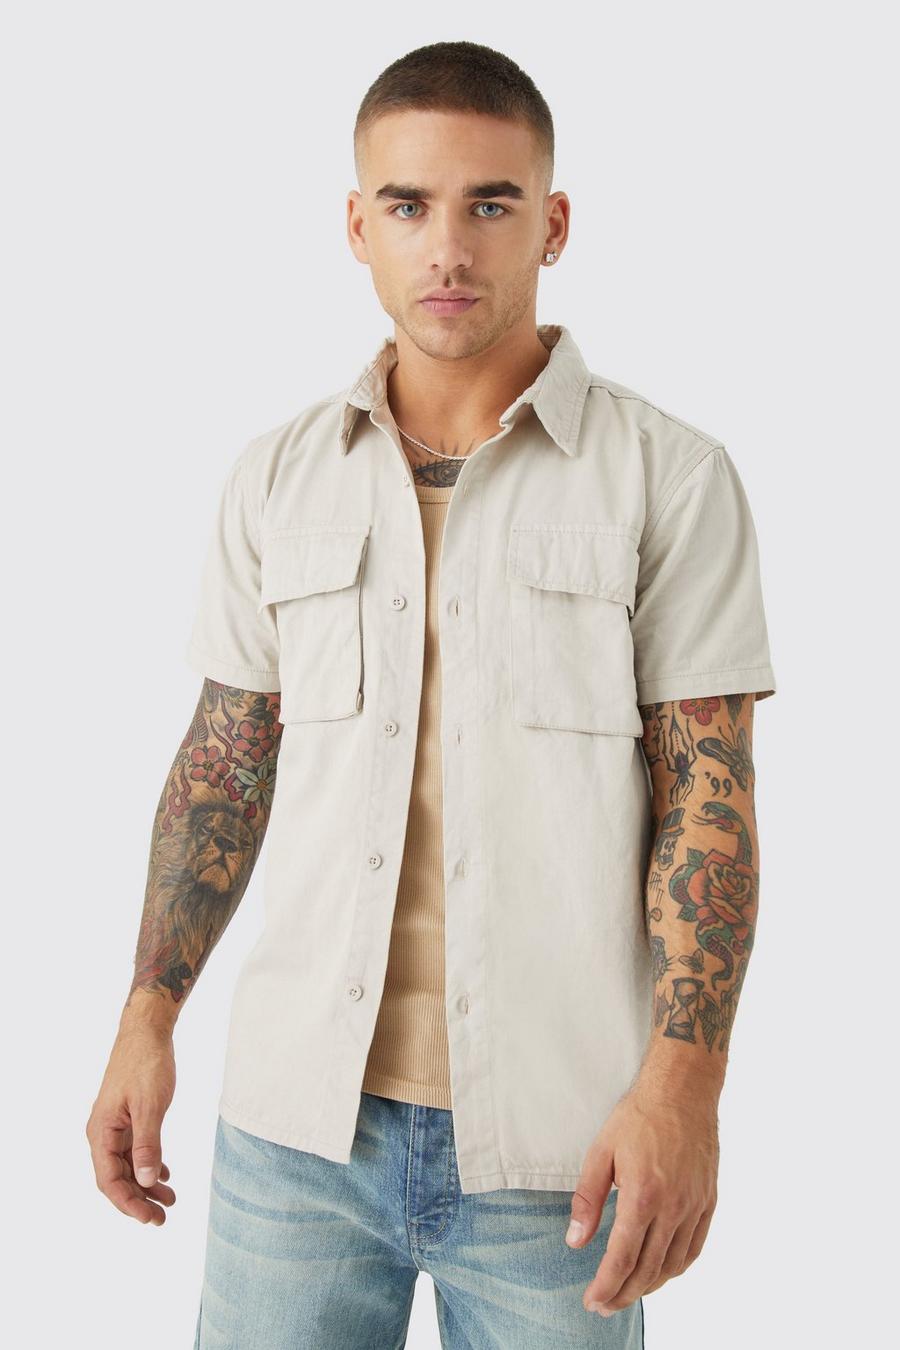 Ecru white Short Sleeve Twill Utility Overshirt